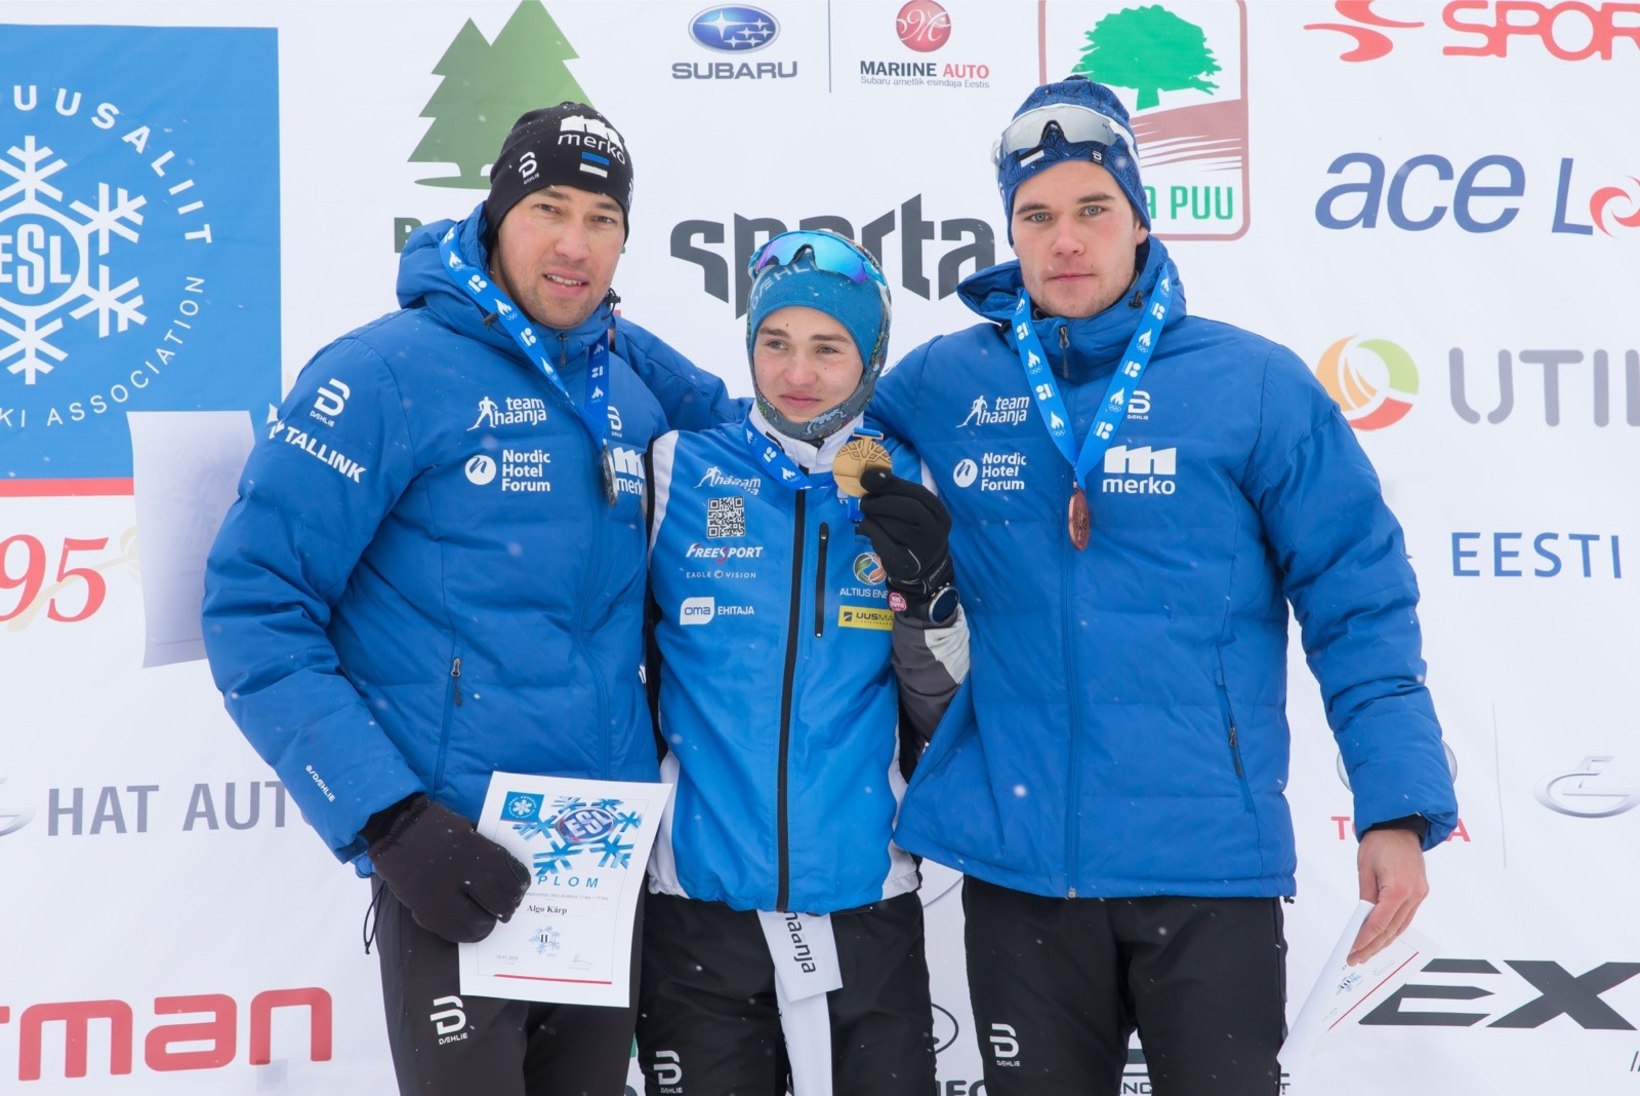 Veerpalu kaotab dopingu tõttu kolm Eesti meistritiitlit, Tammjärv ühe. Tagantjärele võitjad ei oska uudisest rõõmu tunda